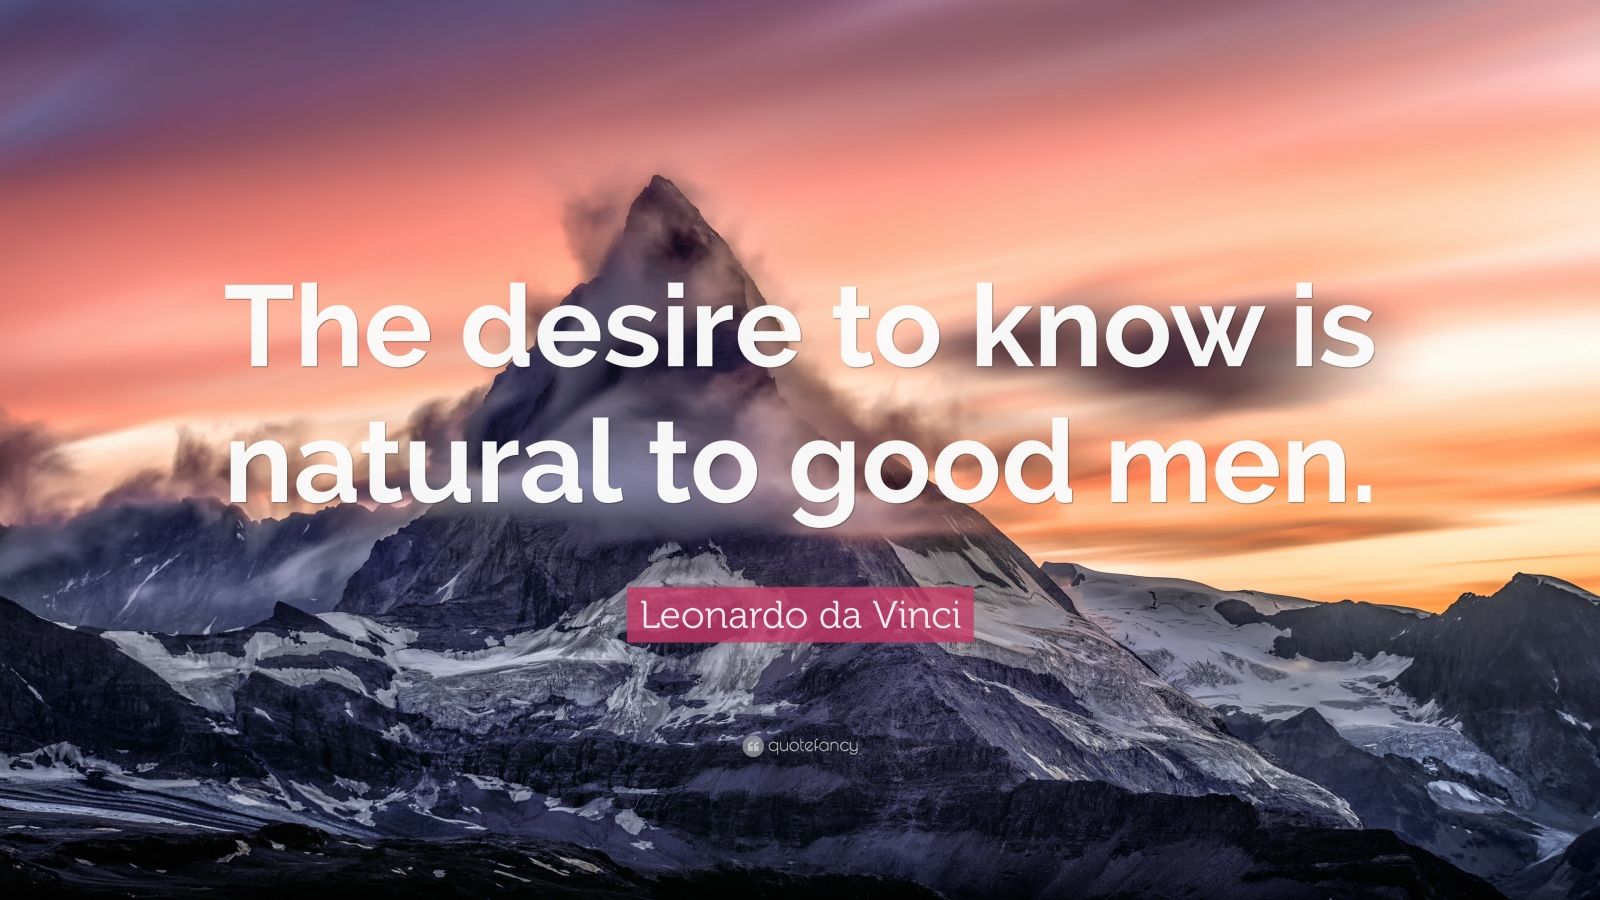 Leonardo da Vinci Quote: “The desire to know is natural to good men ...